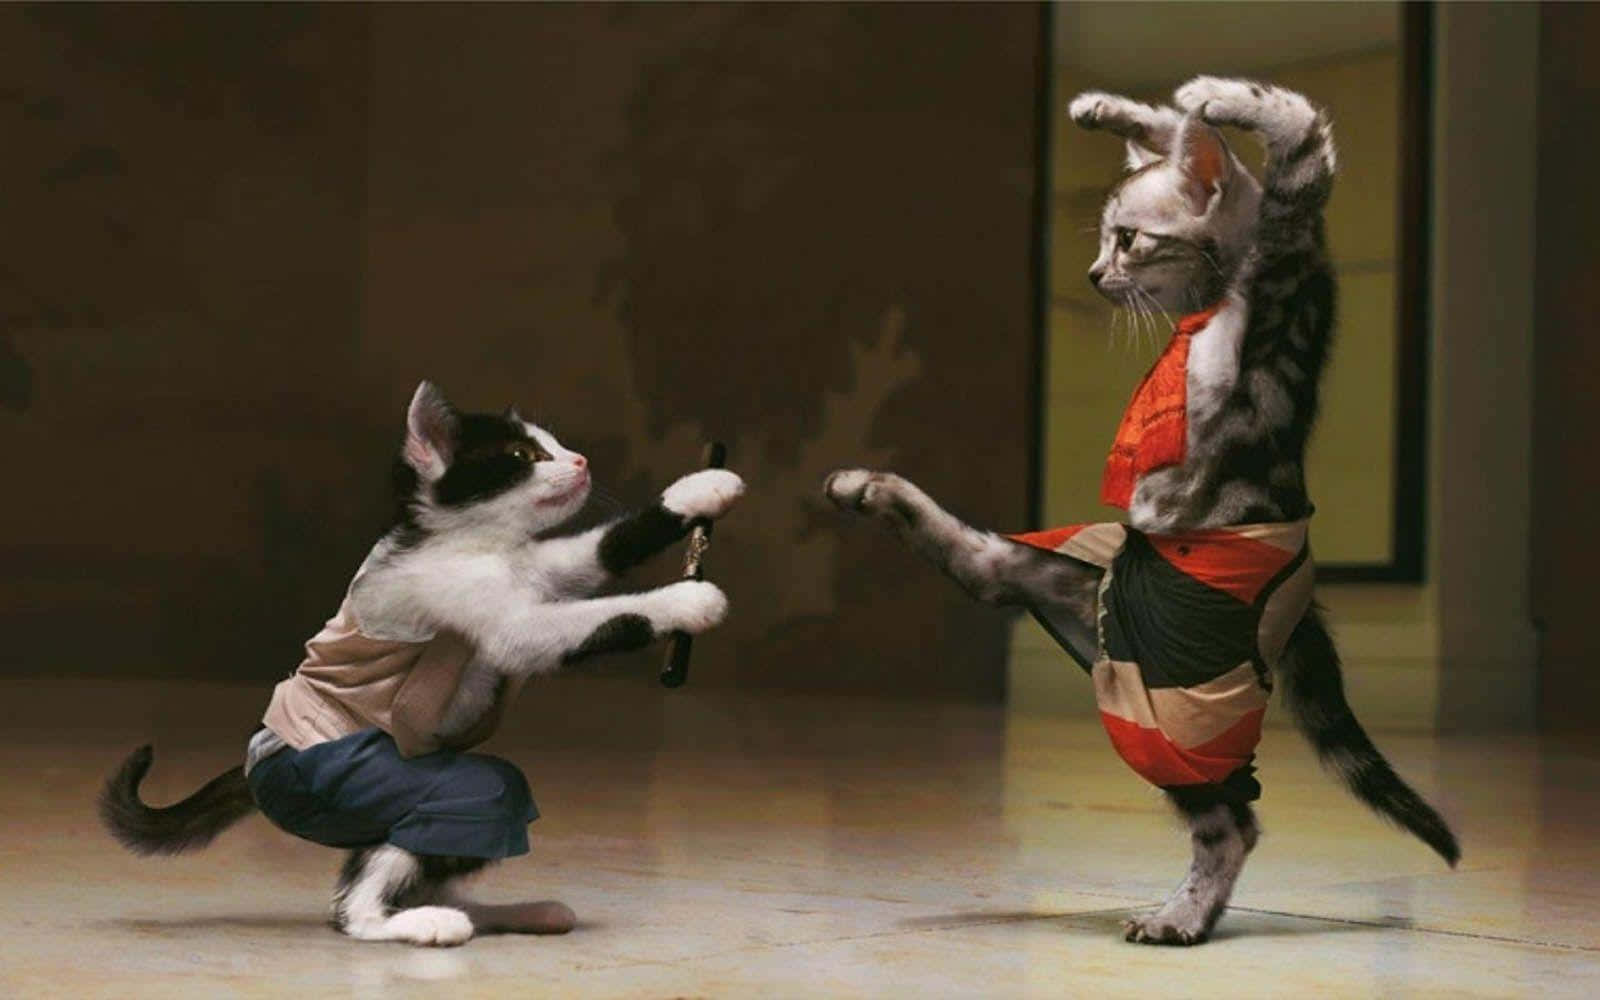 Imagende Un Gato Raro Y Lindo Peleando Karate.